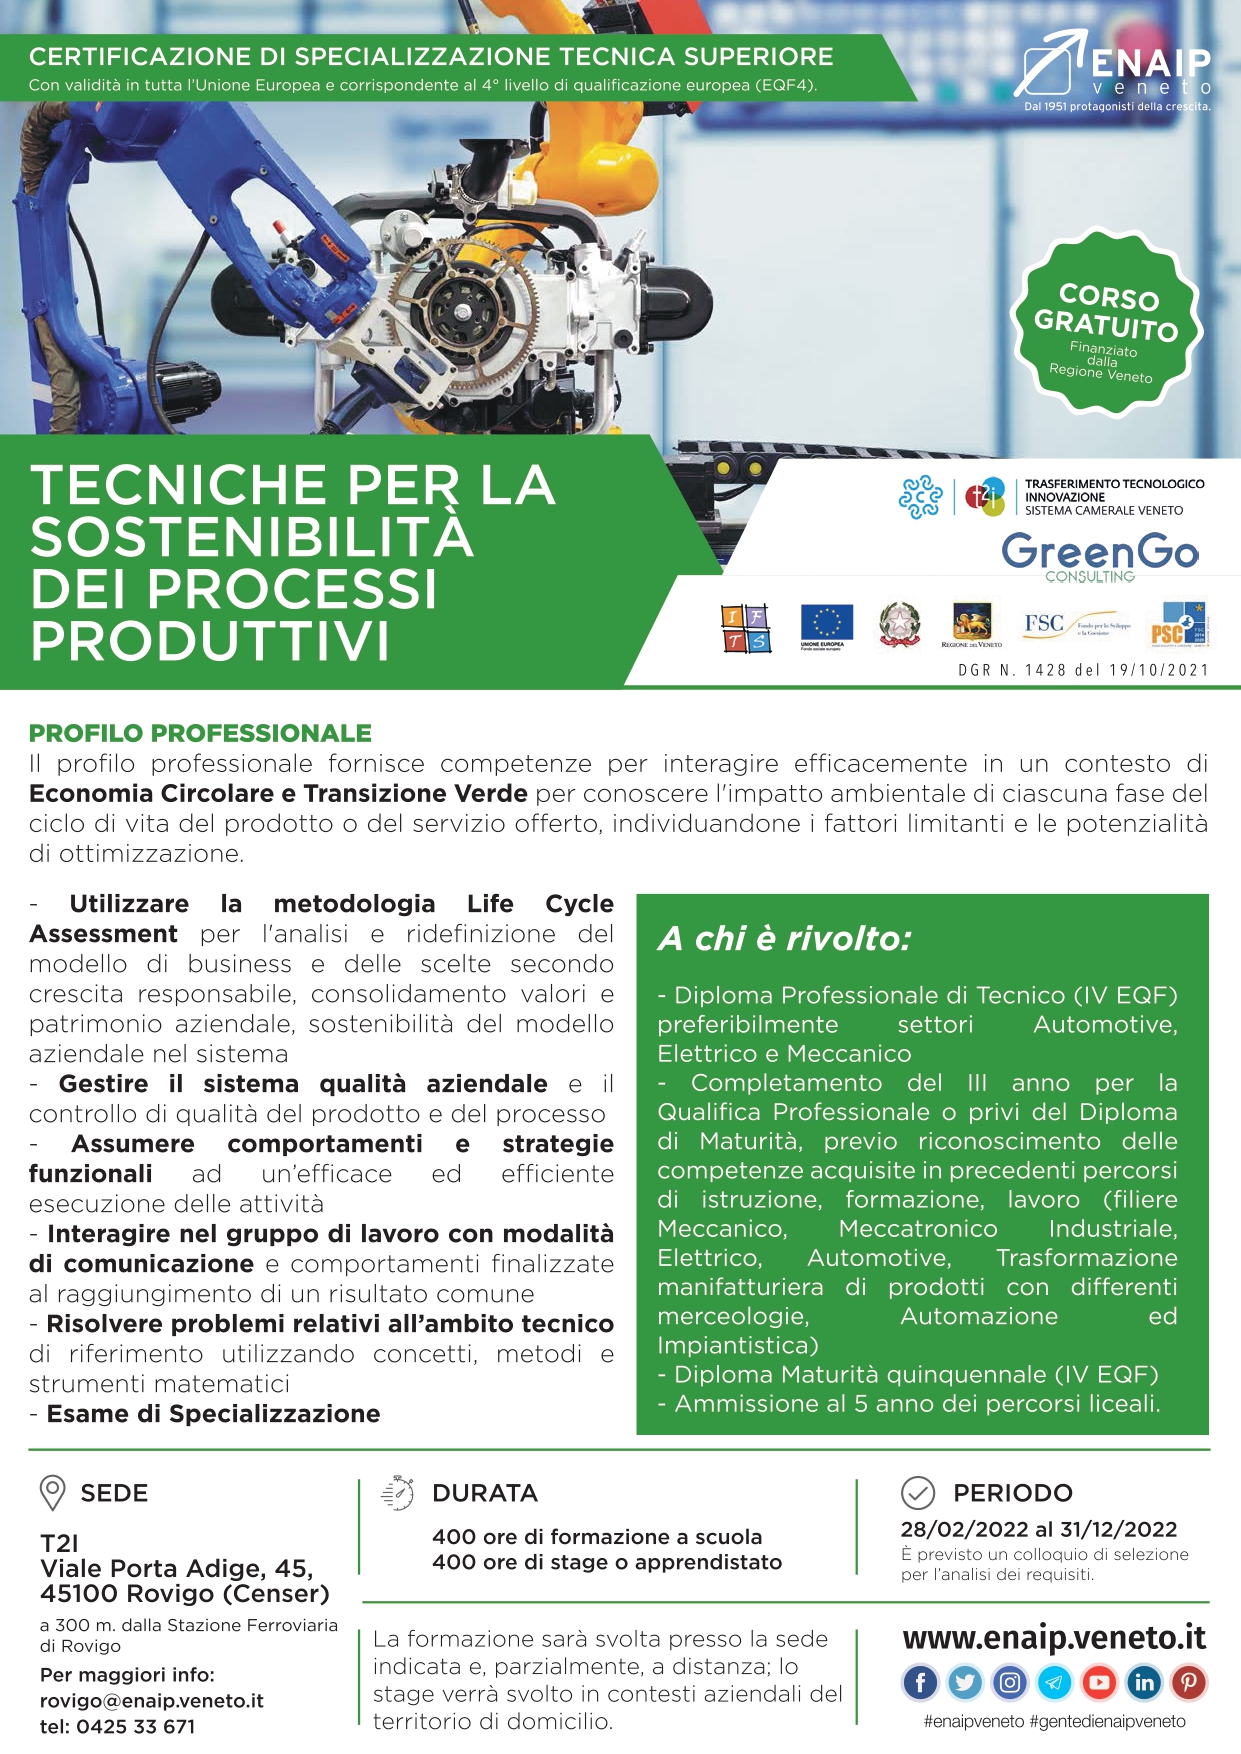 GreenGo Partner di enaip veneto per il corso “Tecniche della Sostenibilità dei Processi Produttivi”